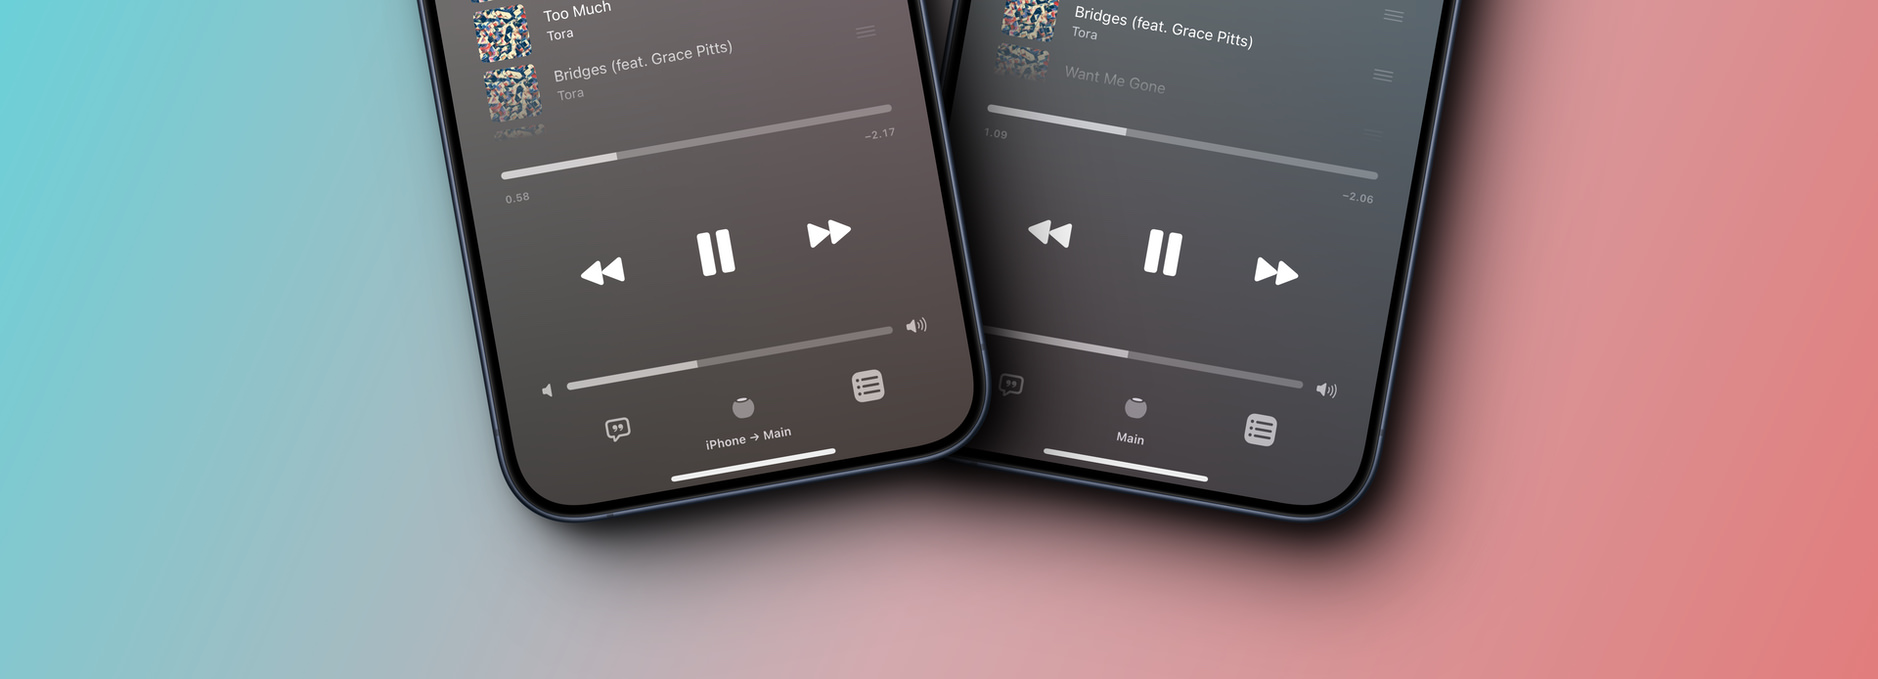 2x iPhone-Screenshot, die das Streaming-Ziel in der Musik-Appzeigen.